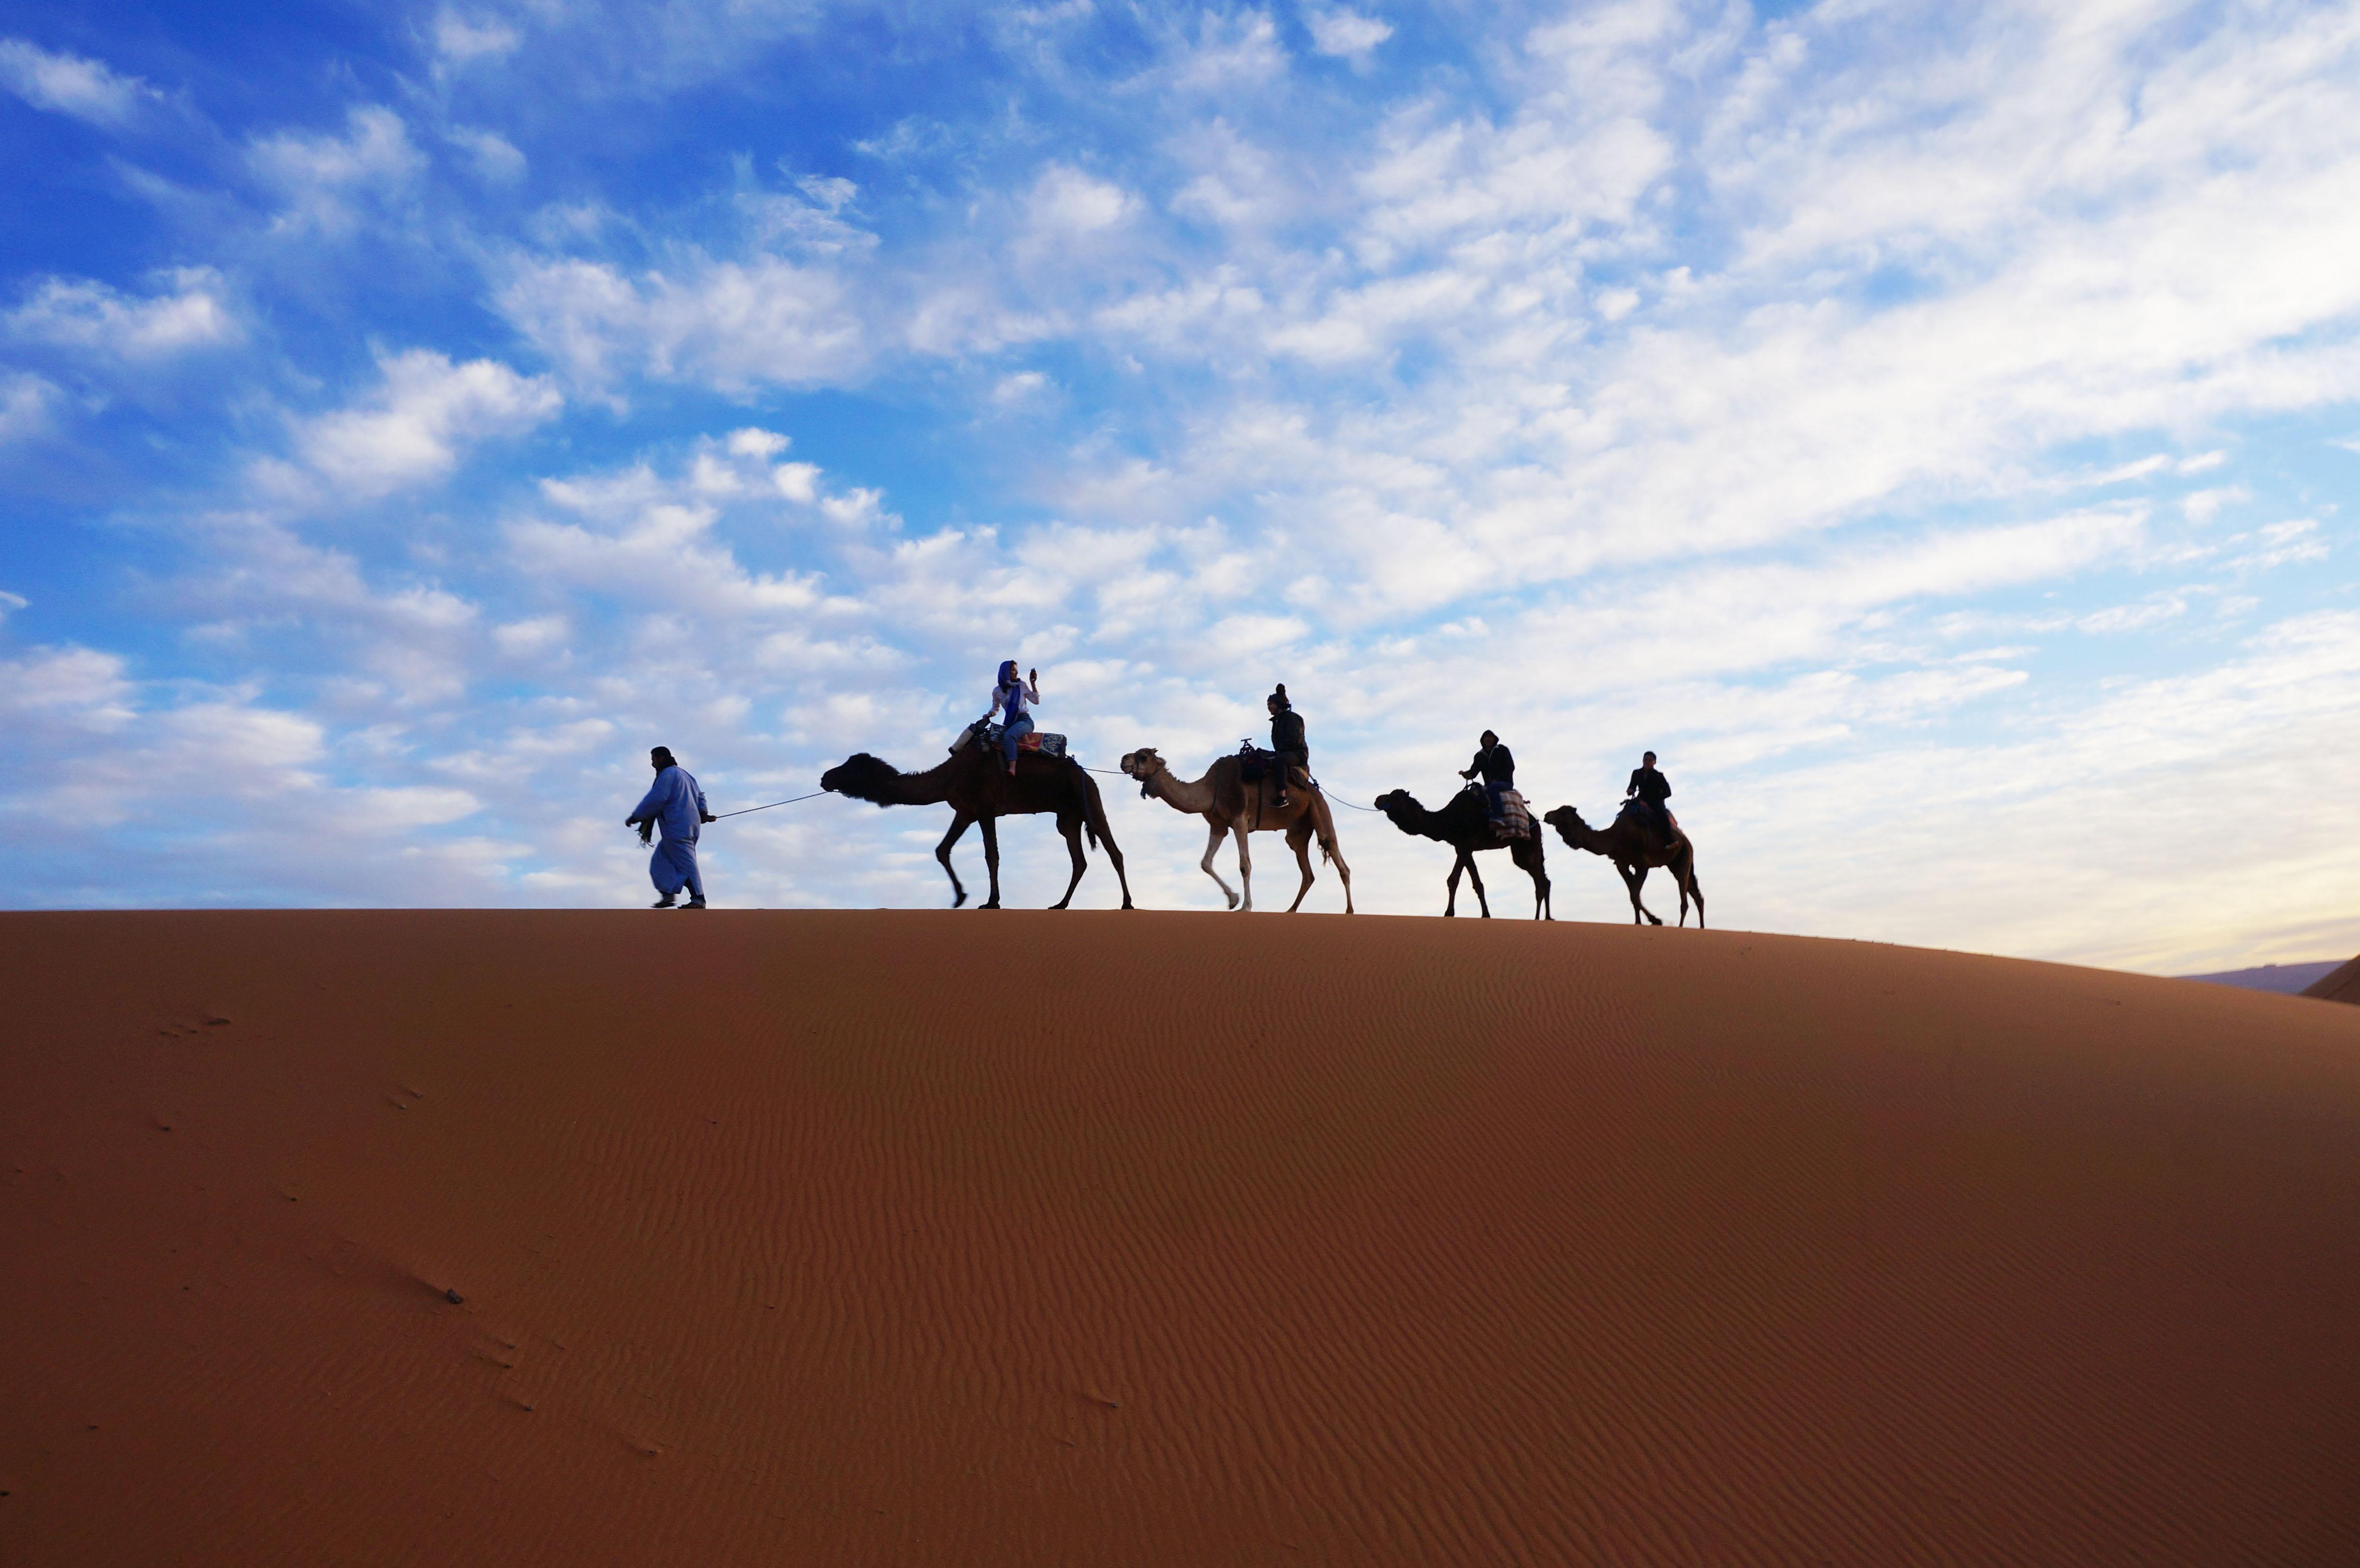 骆驼队在金黄沙漠中前进沙漠旅游 - PSD素材网